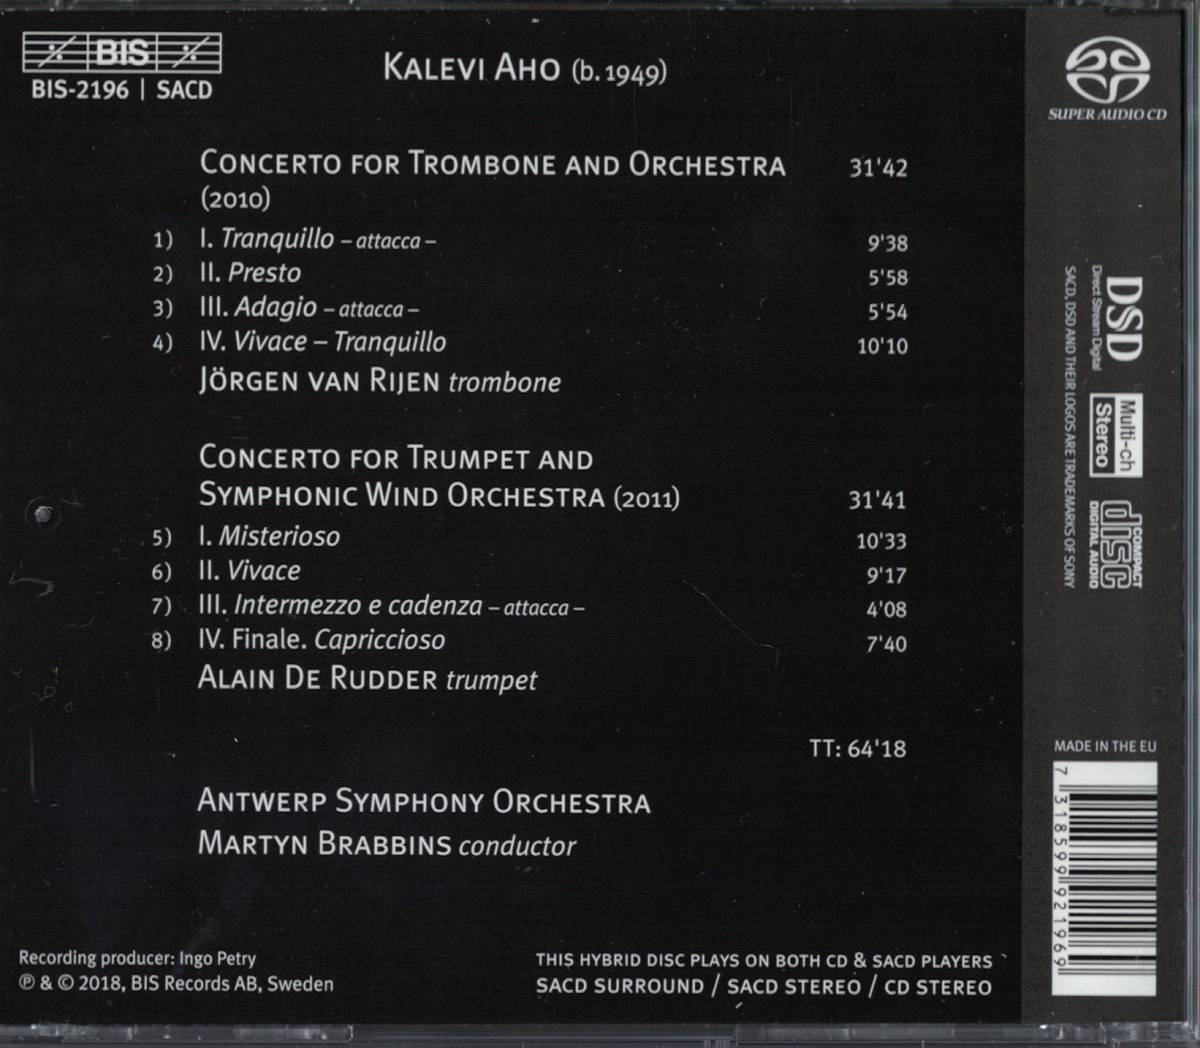 [トロンボーンCD] Jorgen van Rijen - Kalevi Aho: Trombone Concerto ユルゲン・ファン・ライエン カレヴィ・アホ トロンボーン協奏曲_画像2